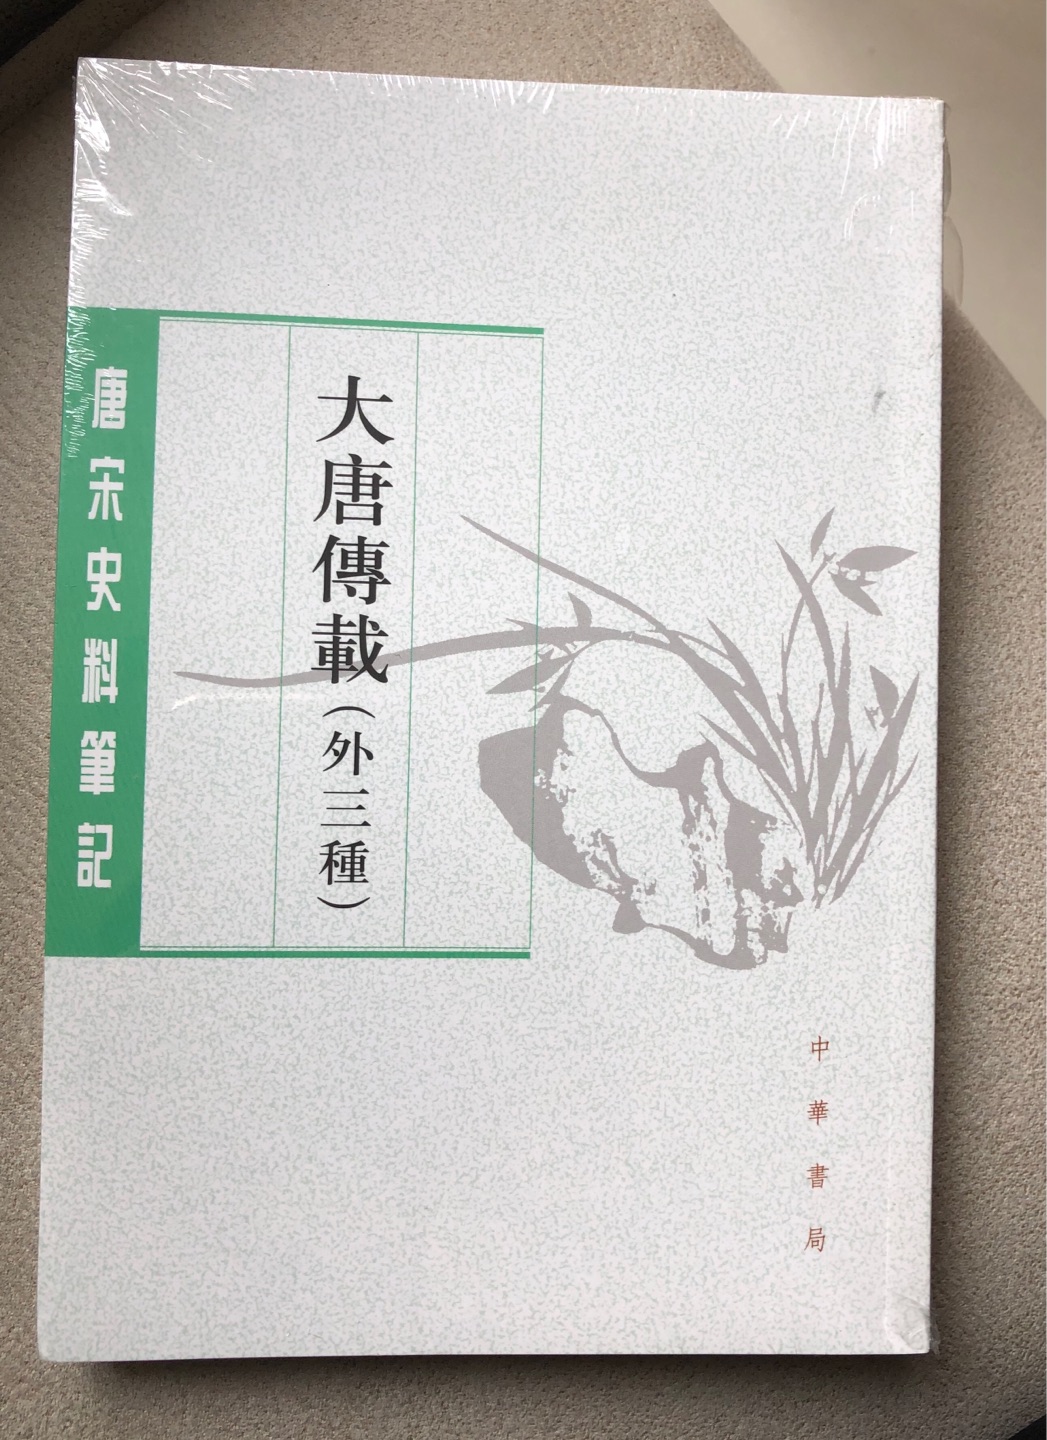 中华书局出版的中国文化系列丛书，装帧好，内容也不错，收藏了